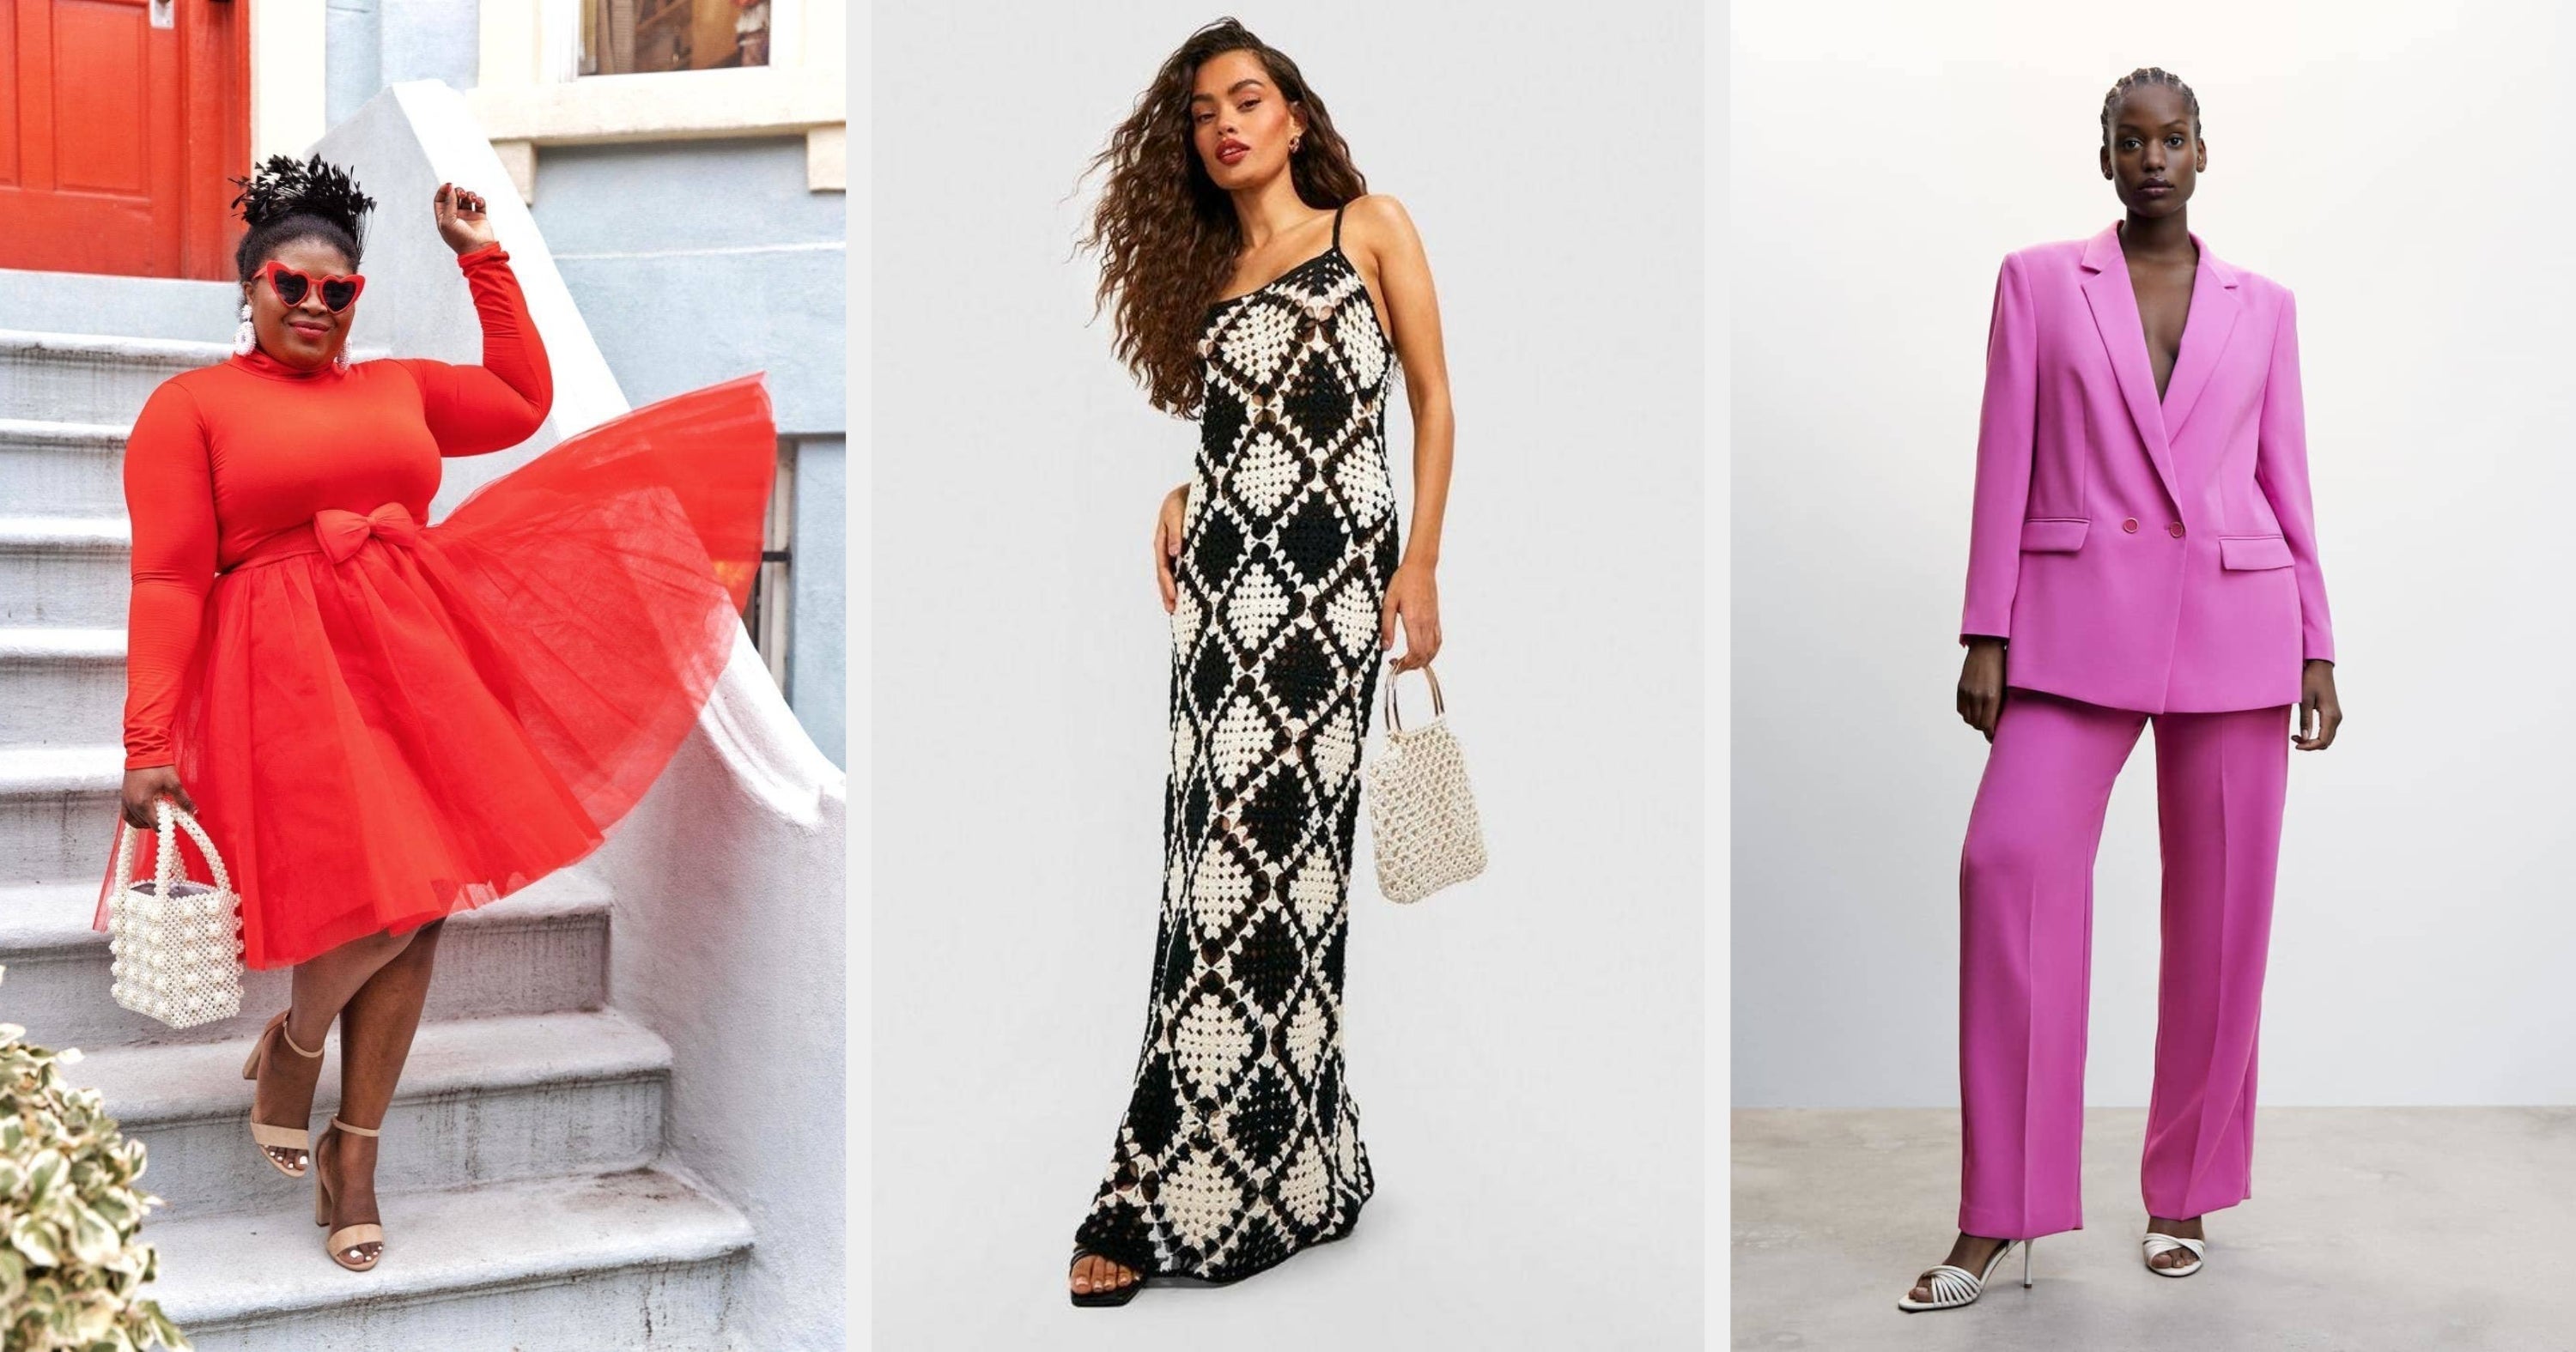 SALE, Dresses, Shop Women's Clothing Online